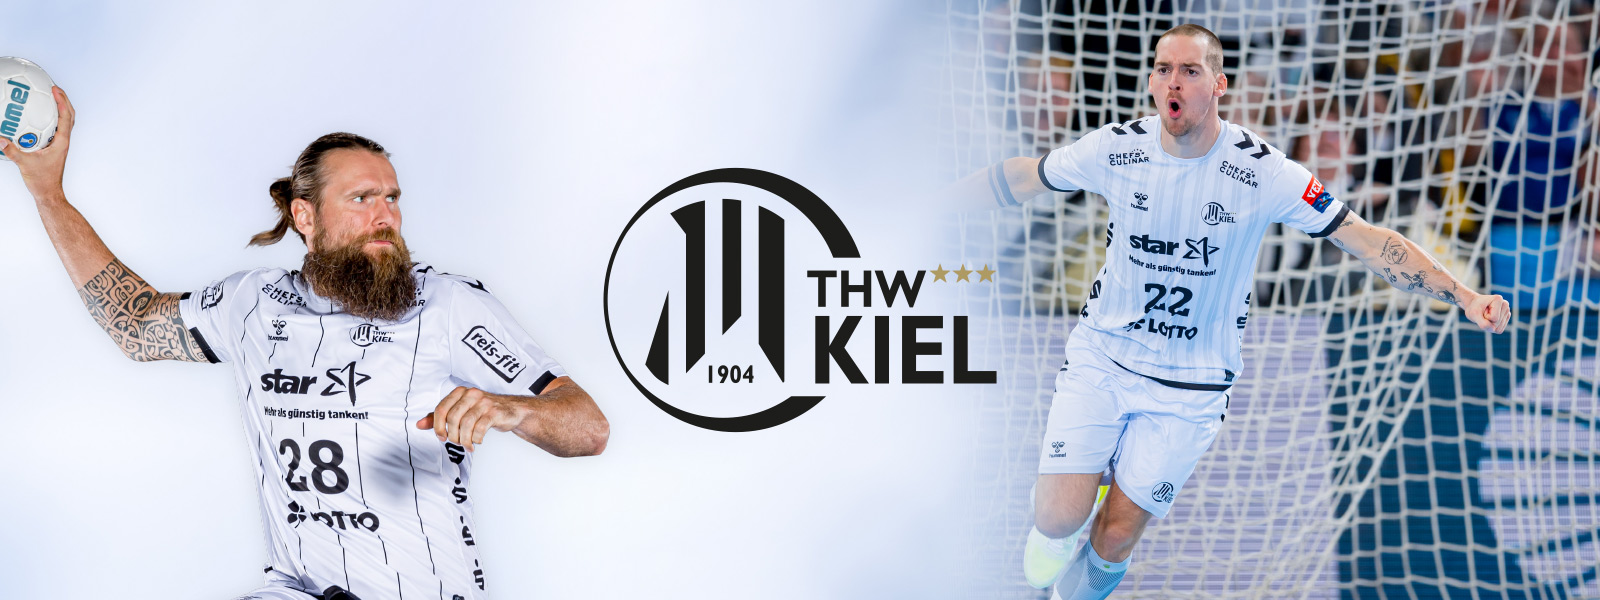 Zweigeteiltes Bild von THW Kiel Handballer mit Bart beim Wurf links und anderem Spieler beim Jubel auf dem Feld rechts	 dazwischen das Logo des Vereins